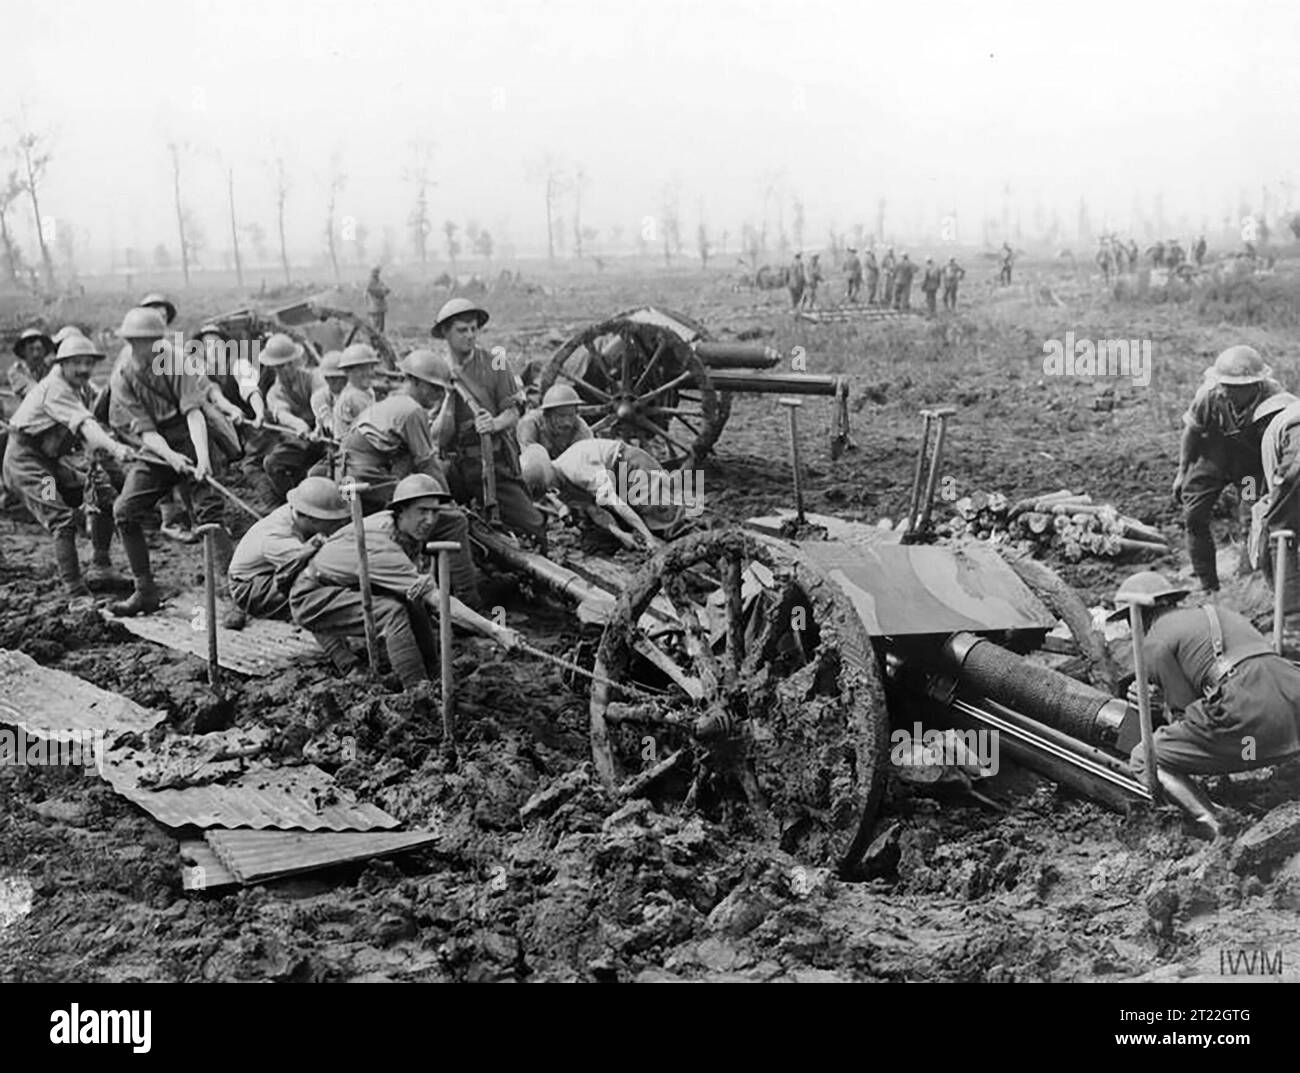 La troisième bataille d'Ypres (la bataille de Passchendaele). Les artilleurs de la Royal Field Artillery tirent un canon de campagne de 18 livres hors de la boue près de Zillebeke, le 9 août 1917. Photo de John Warwick Brooke. Banque D'Images